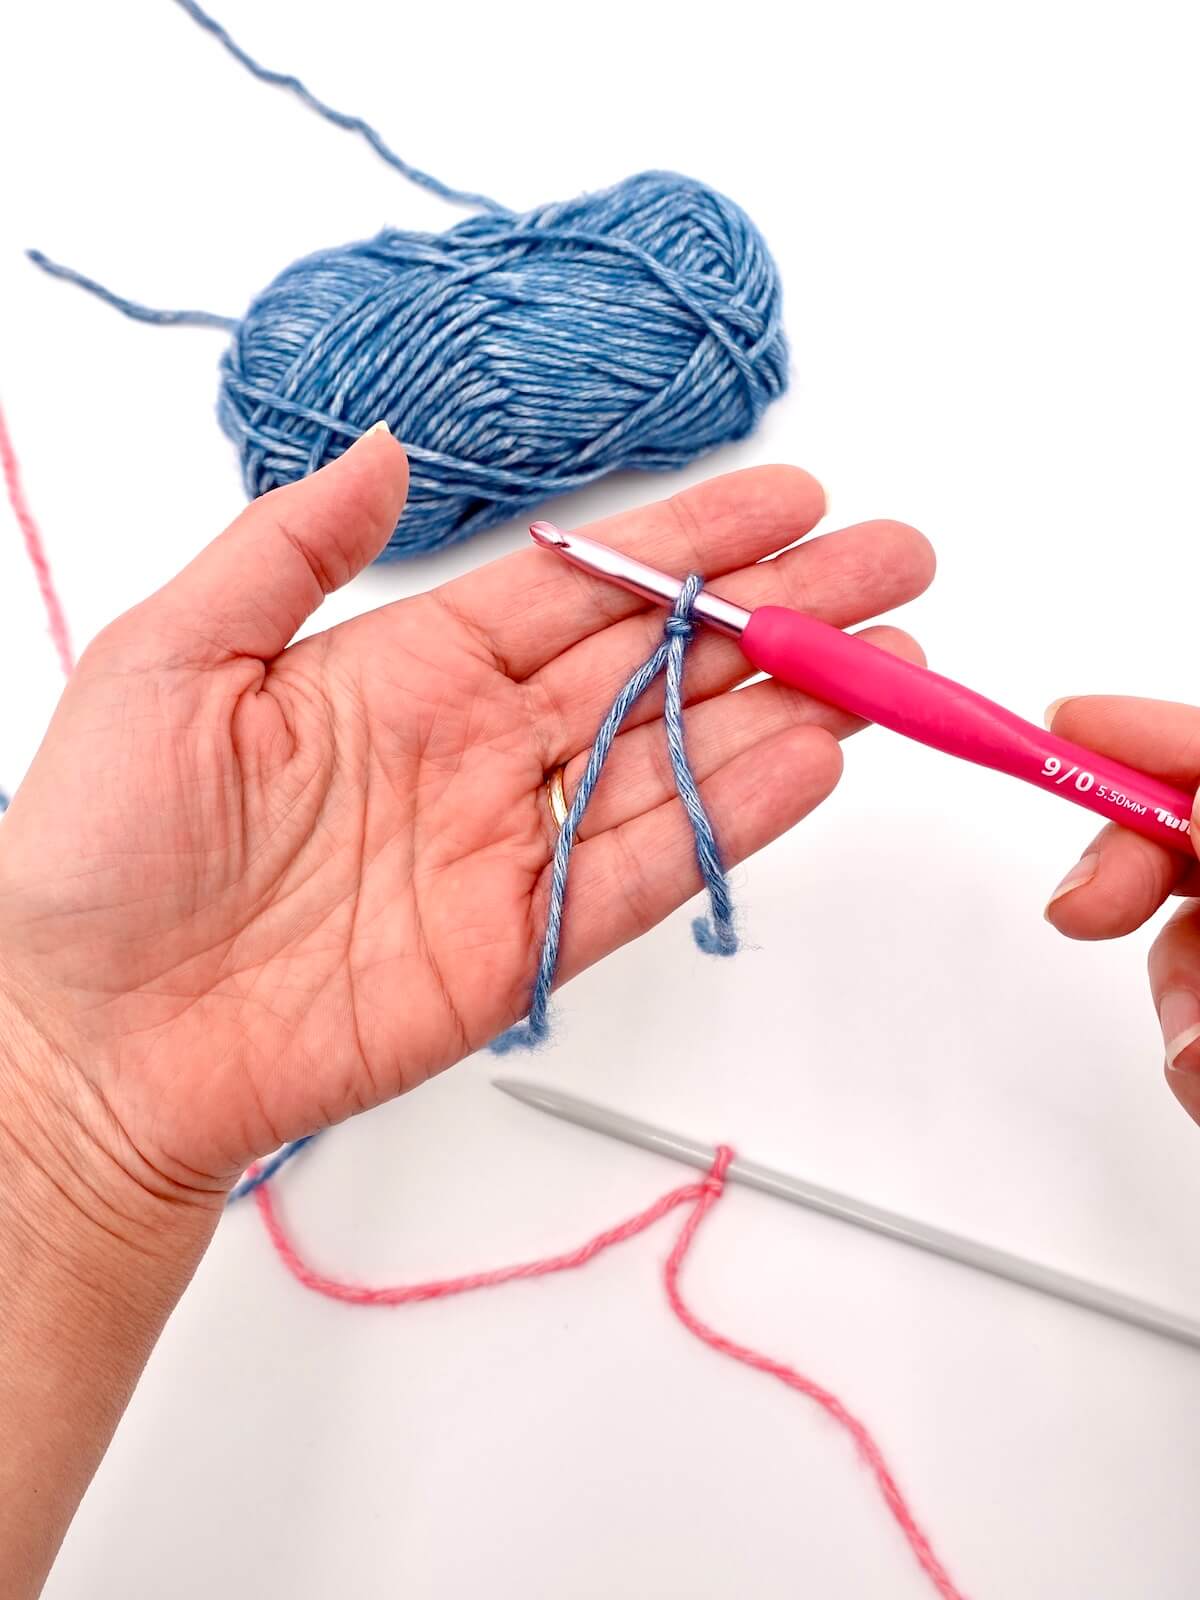 Comment faire un noeud coulant (ou coulissant) : tuto pour apprendre le tricot ou le crochet, première maille ou boucle, 3 techniques